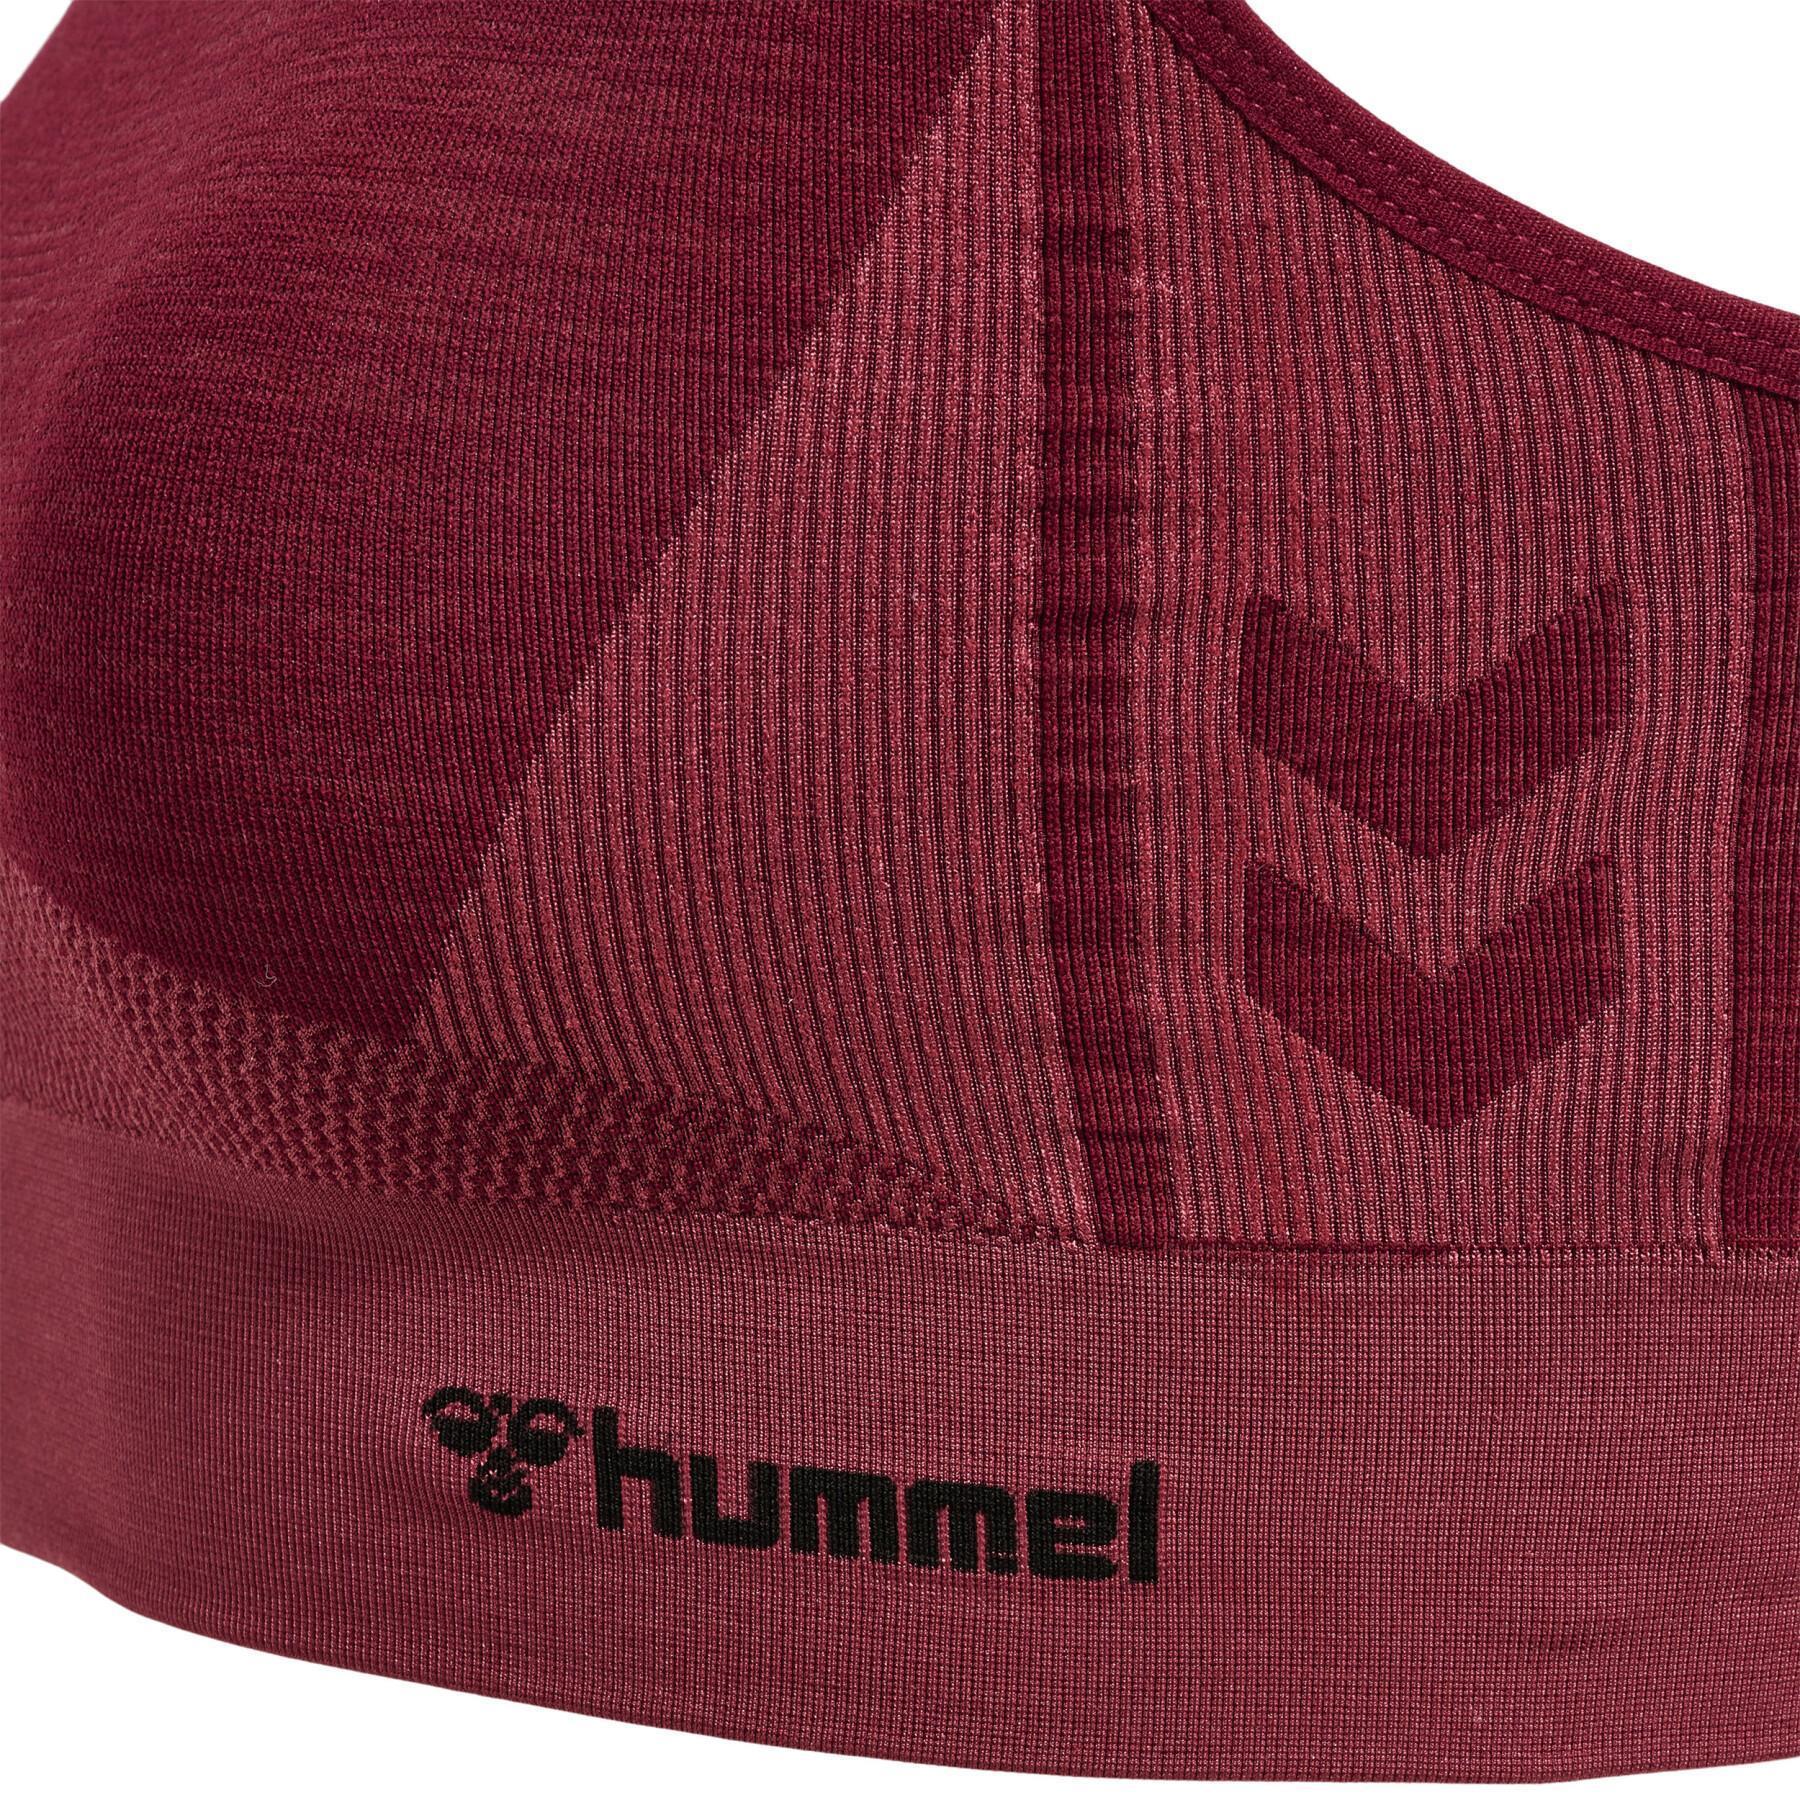 Seamless sports bra for women Hummel Clea - Hummel - Brands - Lifestyle